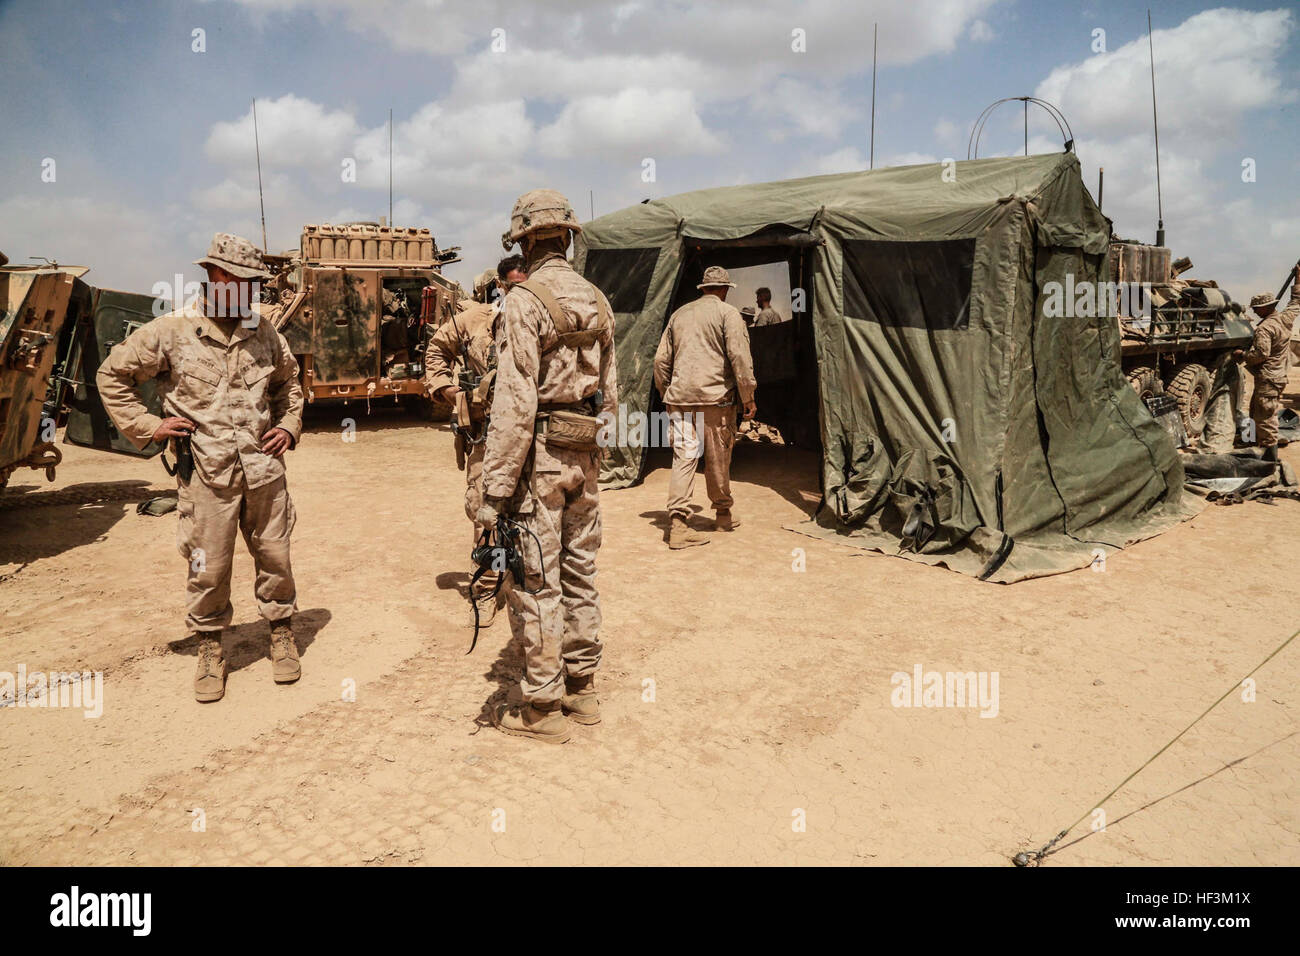 Strand von ARTA, Dschibuti (1. Oktober 2015) US-Marines mit dem 15. Marine Expeditionary Unit eine Kampfhandlungen Center einrichten mit Soldaten aus dem Französisch 5. Übersee kombiniert Arme Regiment (RIAOM) während einer Wüste überleben und Taktik. Elemente des 15. MEU sind mit der 5. RIAOM in Dschibuti Ausbildung, um die Interoperabilität zwischen den MEU und der französischen Armee zu verbessern. (U.S. Marine Corps Foto von Sgt. Steve H. Lopez/freigegeben) US-Marines, Französisch eingerichtet, trainieren in Dschibuti 151001-M-TJ275-022 Stockfoto